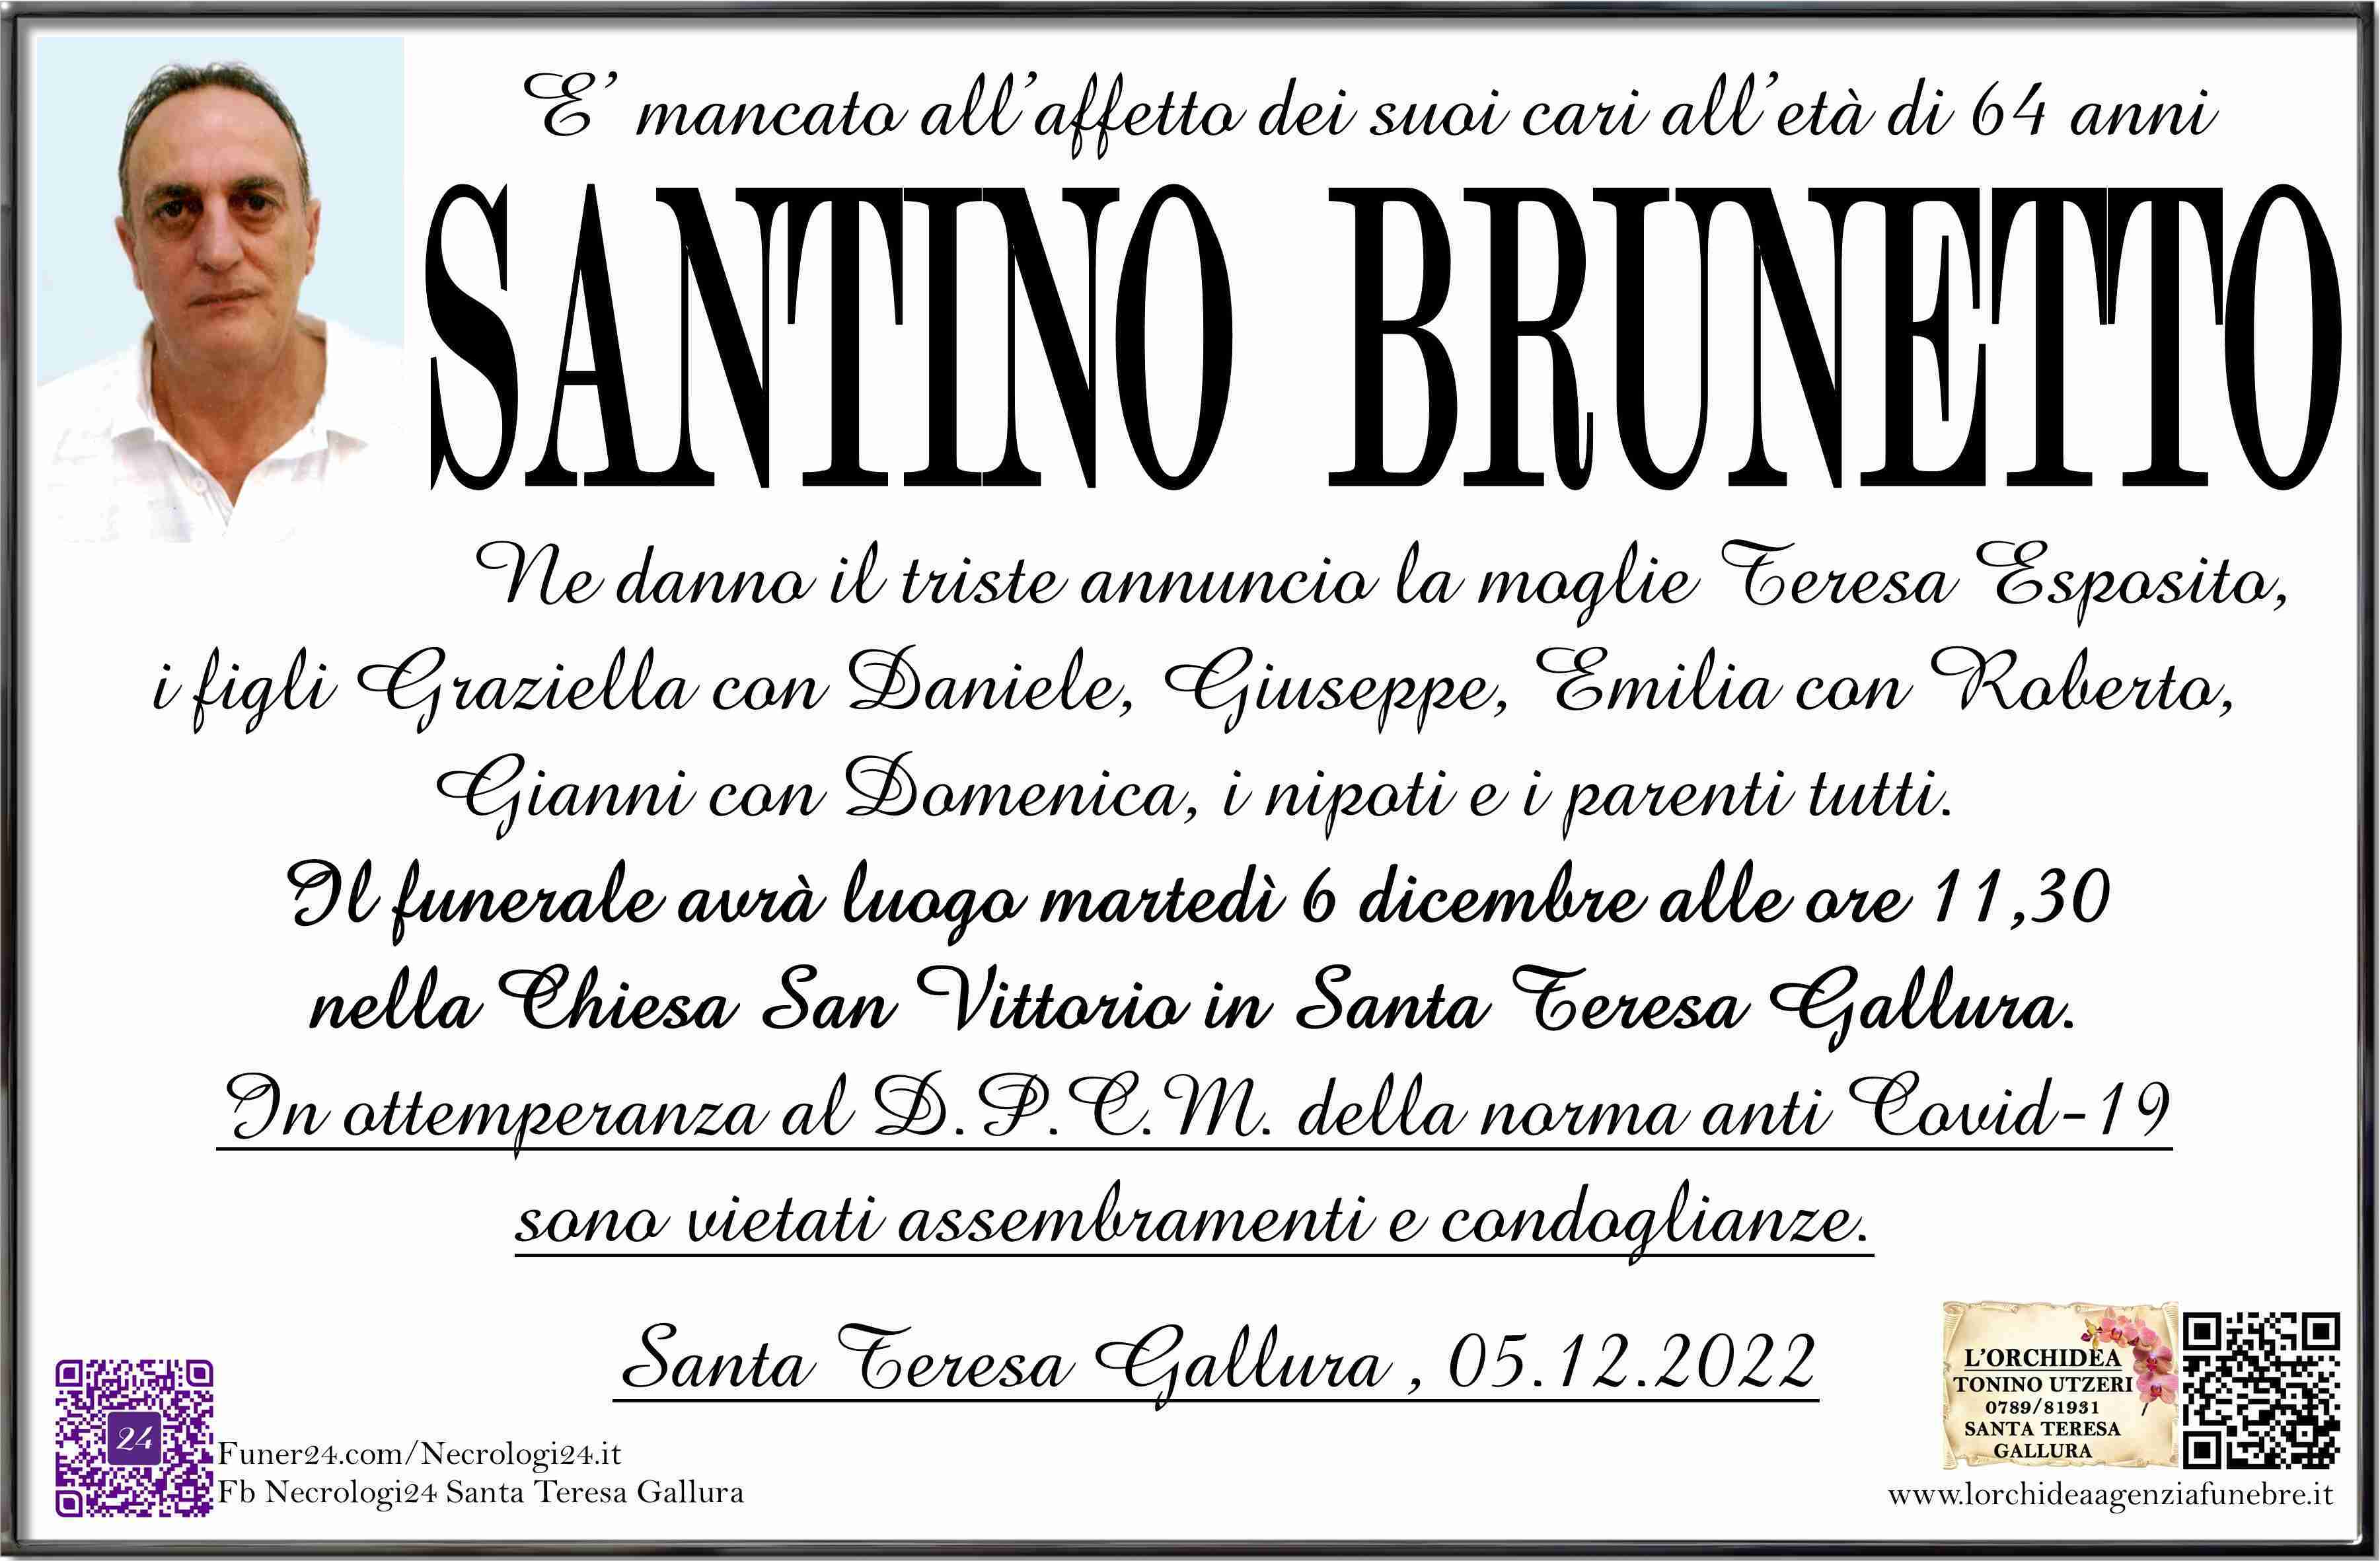 Santino Brunetto